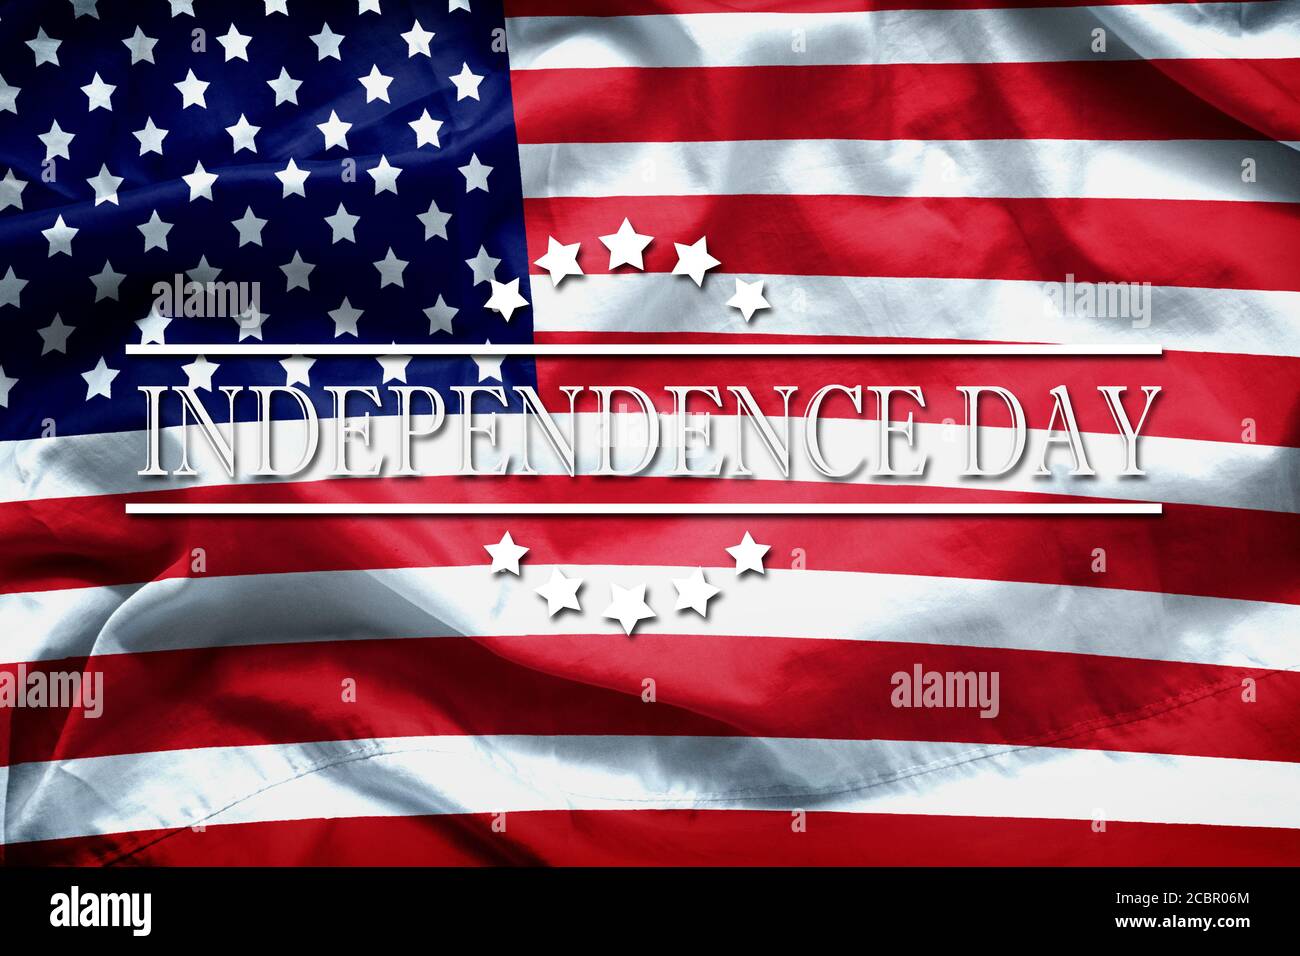 Happy Independence Day Grußkarte, National american Holiday. Independence Day Hintergrund erinnern und Ehre, Wort Independence Day auf amerikanischen f Stockfoto